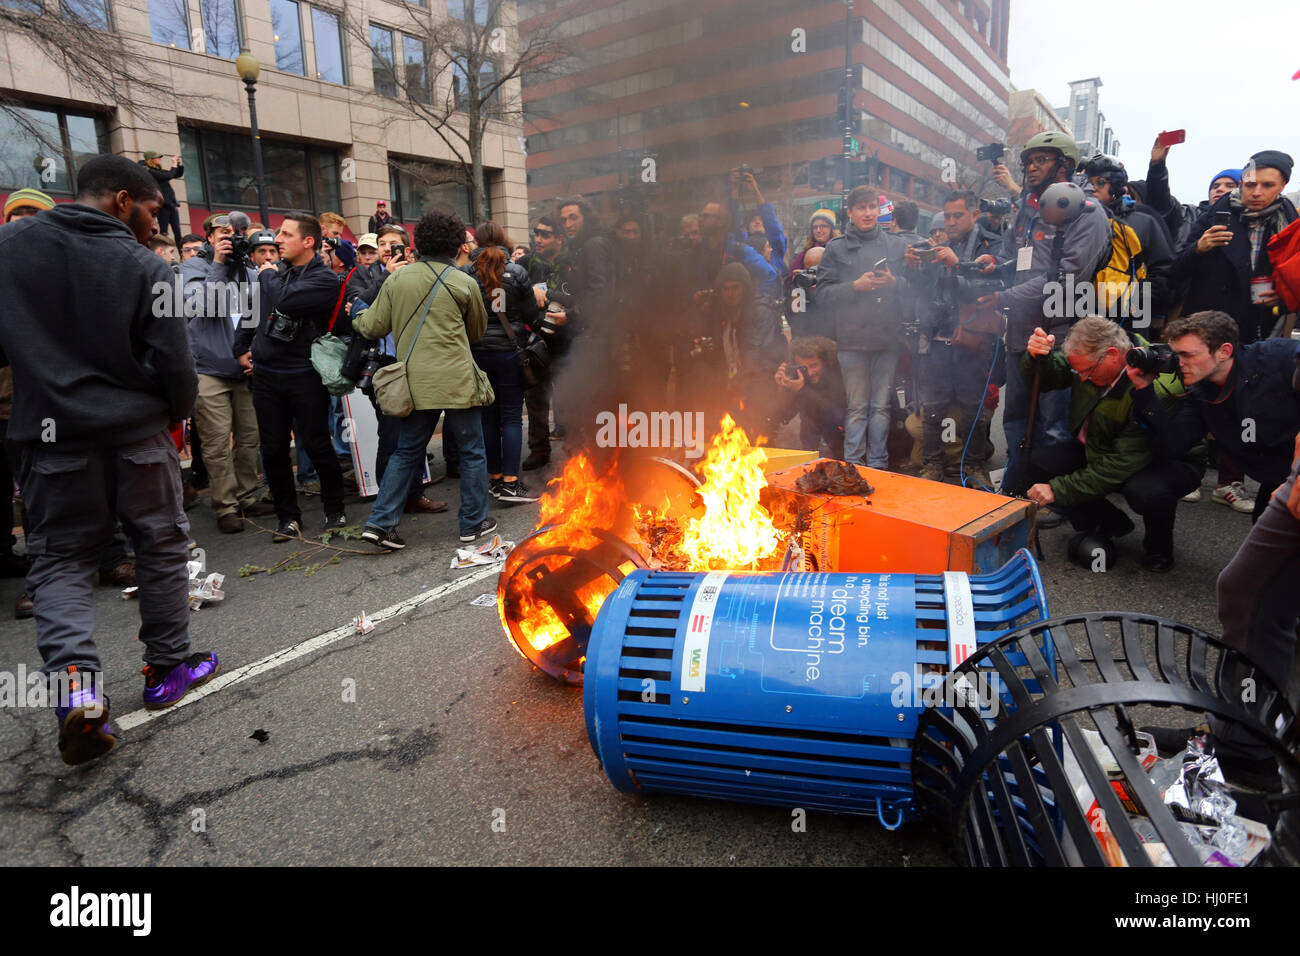 Washington DC, USA. Januar 20, 2017. Medien und Fotografen, die einen Mülltonne-Brand von antikapitalistischen, antifaschistischen Aktivisten am Tag der Einweihung abdecken Stockfoto